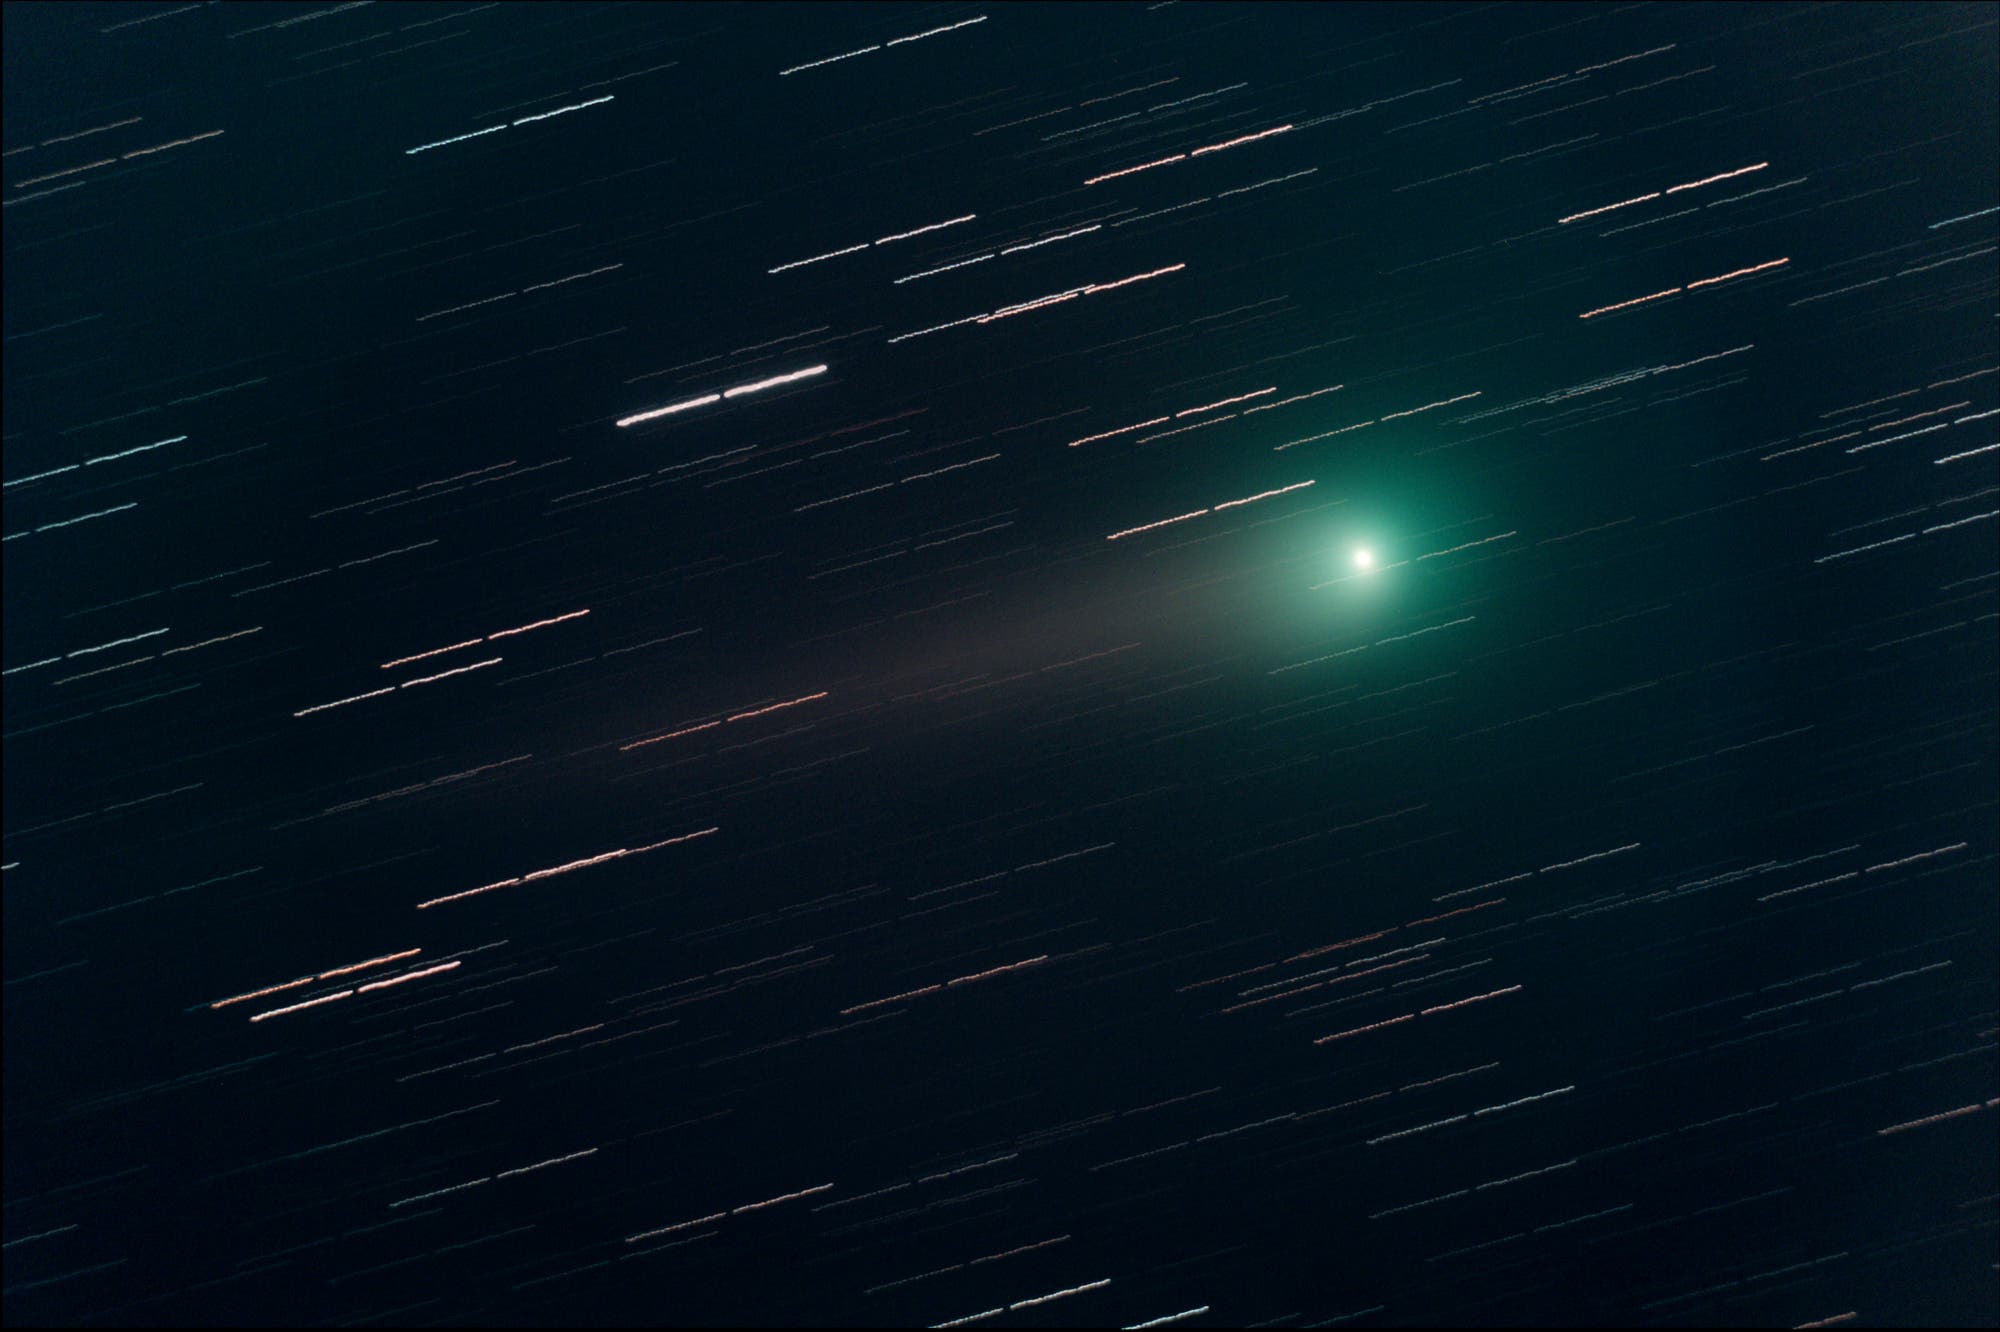 Komet C/2007 N3 (Lulin)